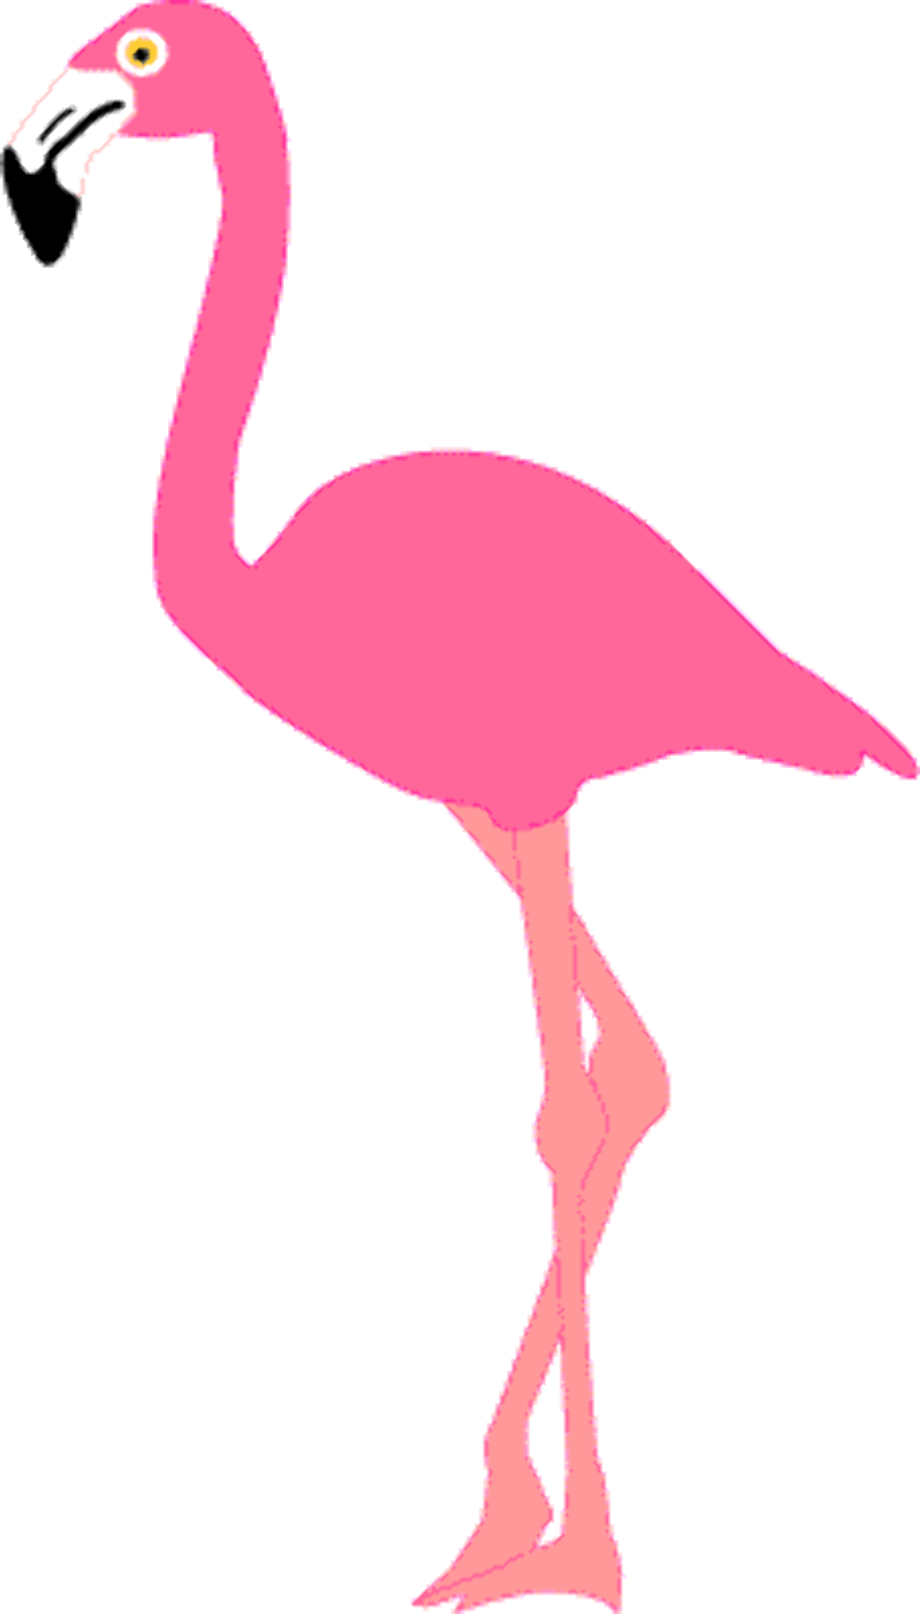 walking flamingo cartoon